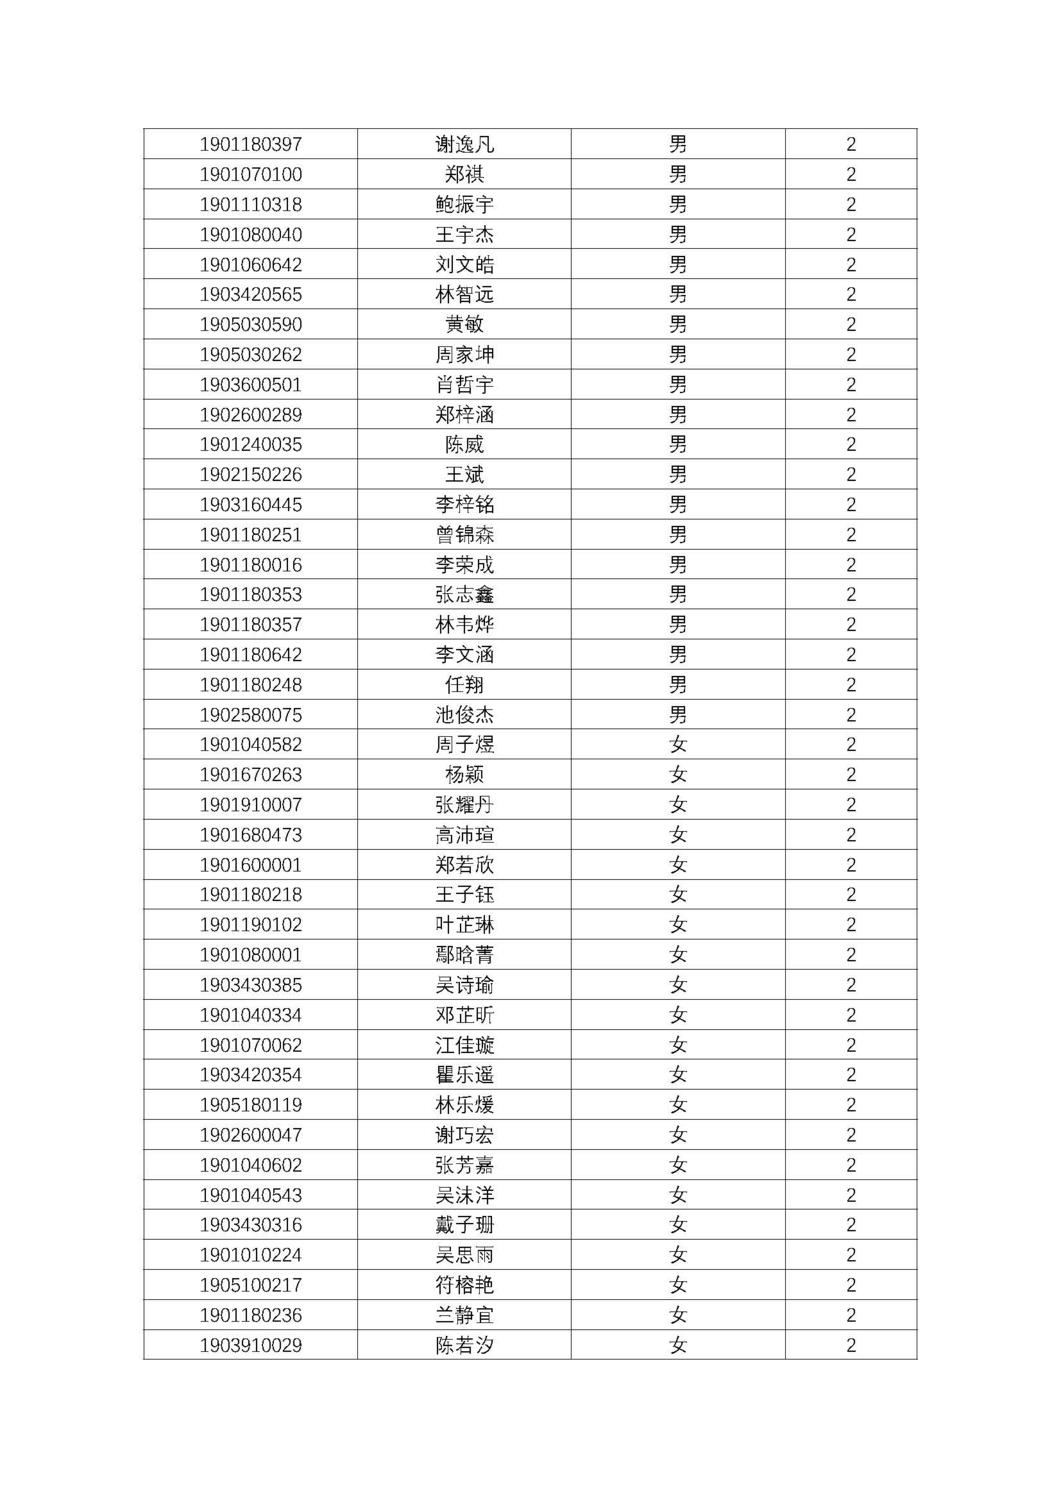 福州第十八中学2019级高一新生分班名单及报到须知_页面_03.jpg